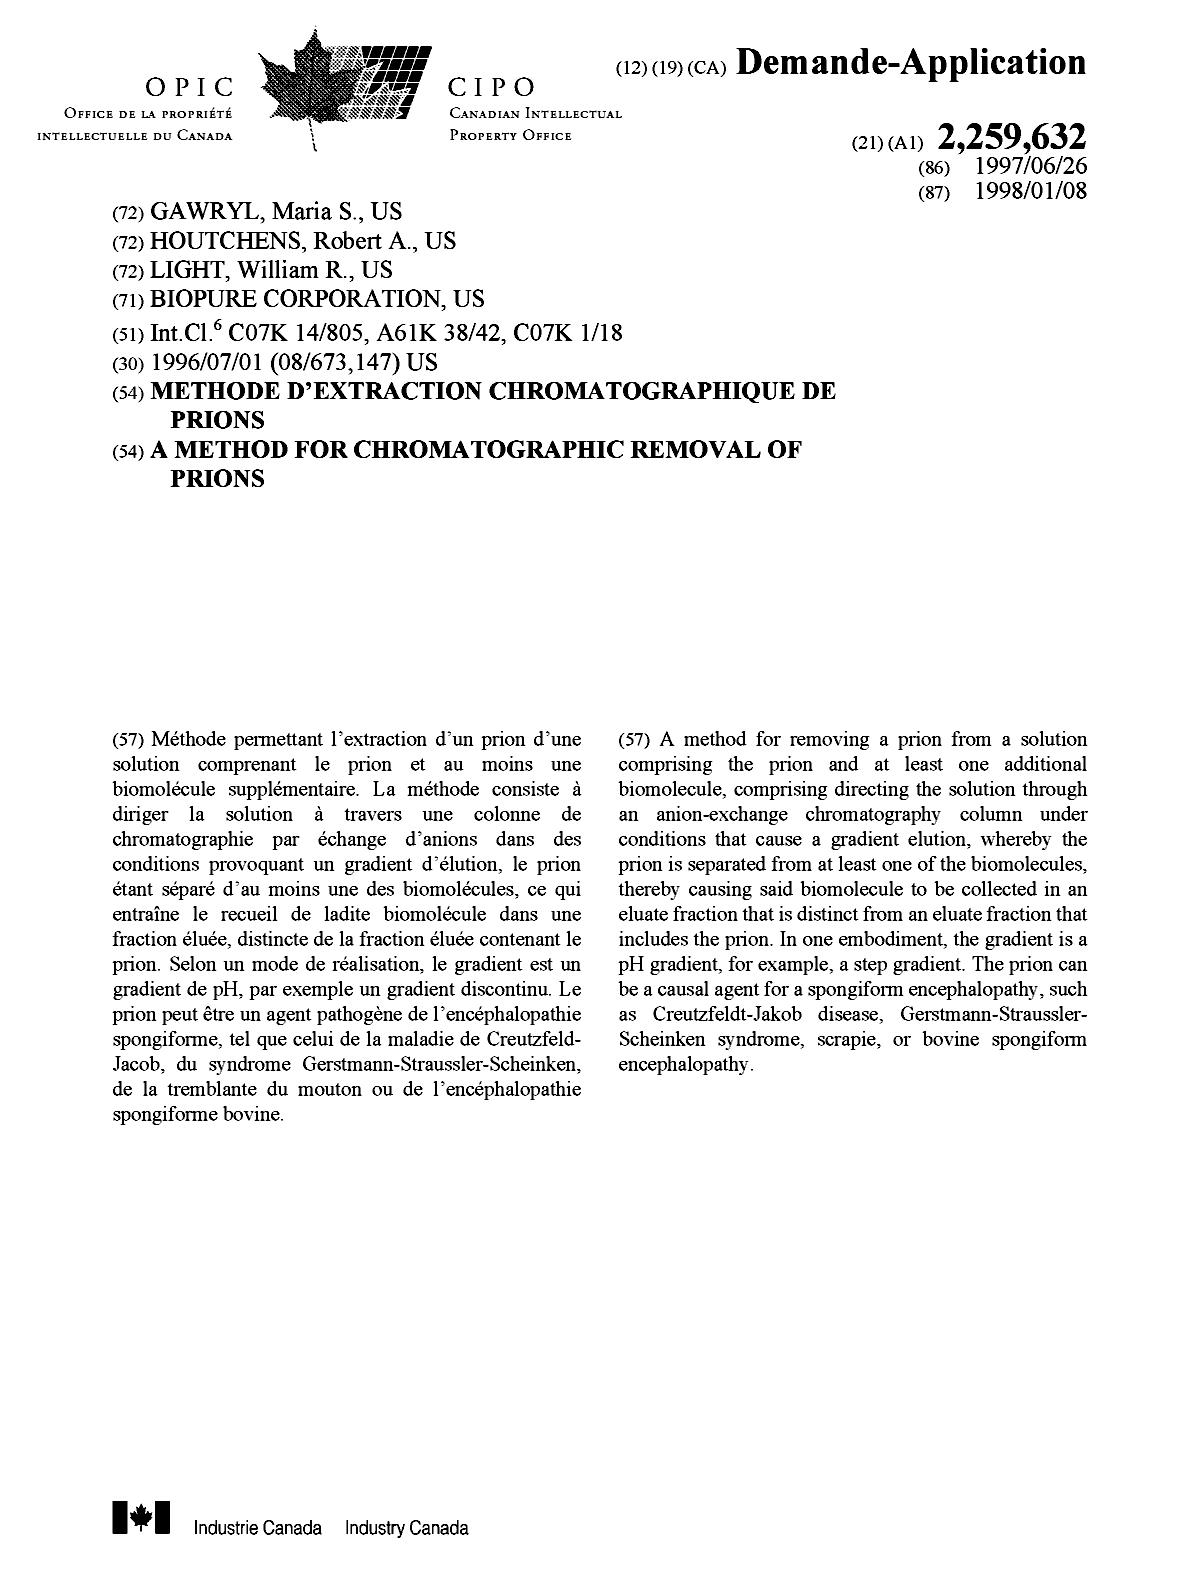 Document de brevet canadien 2259632. Page couverture 19990330. Image 1 de 1